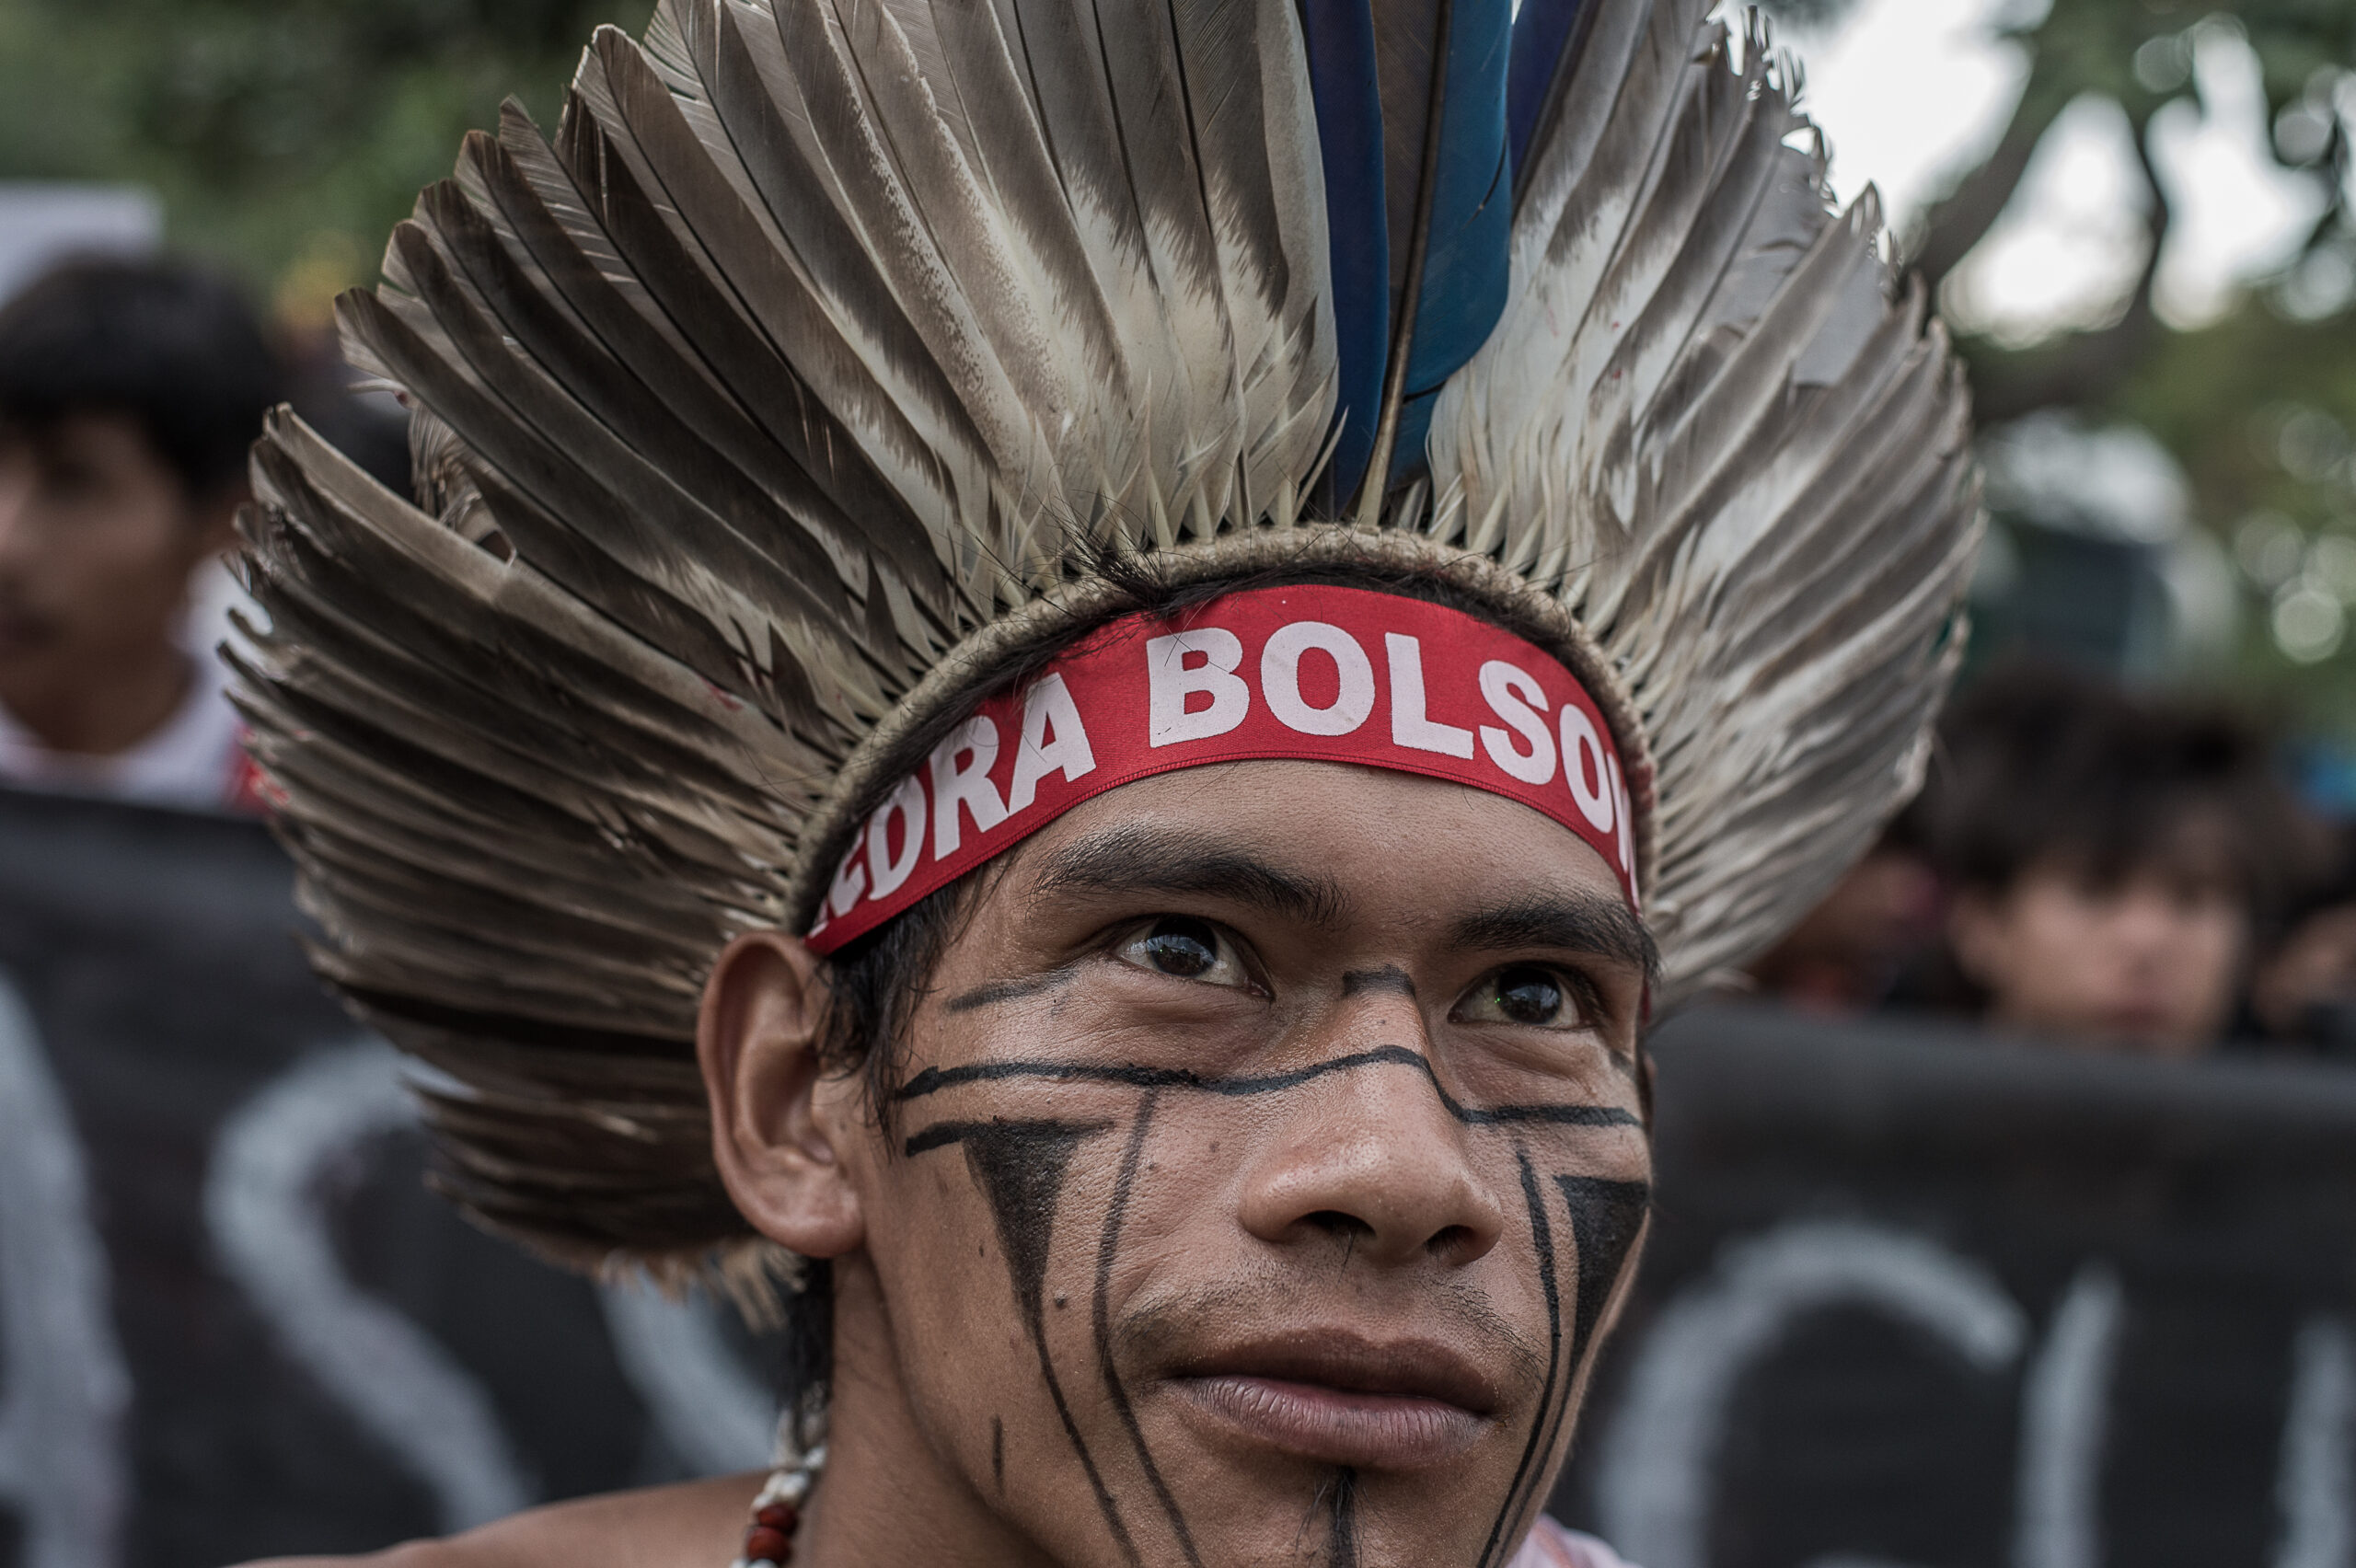 Homem indígena usando um cocar marrom, preto e branco olha ao longe. Ele tem pinturas geométricas pretas no rosto e usa uma faixa na testa vermelha, onde lê-se "Fora Bolsonaro".